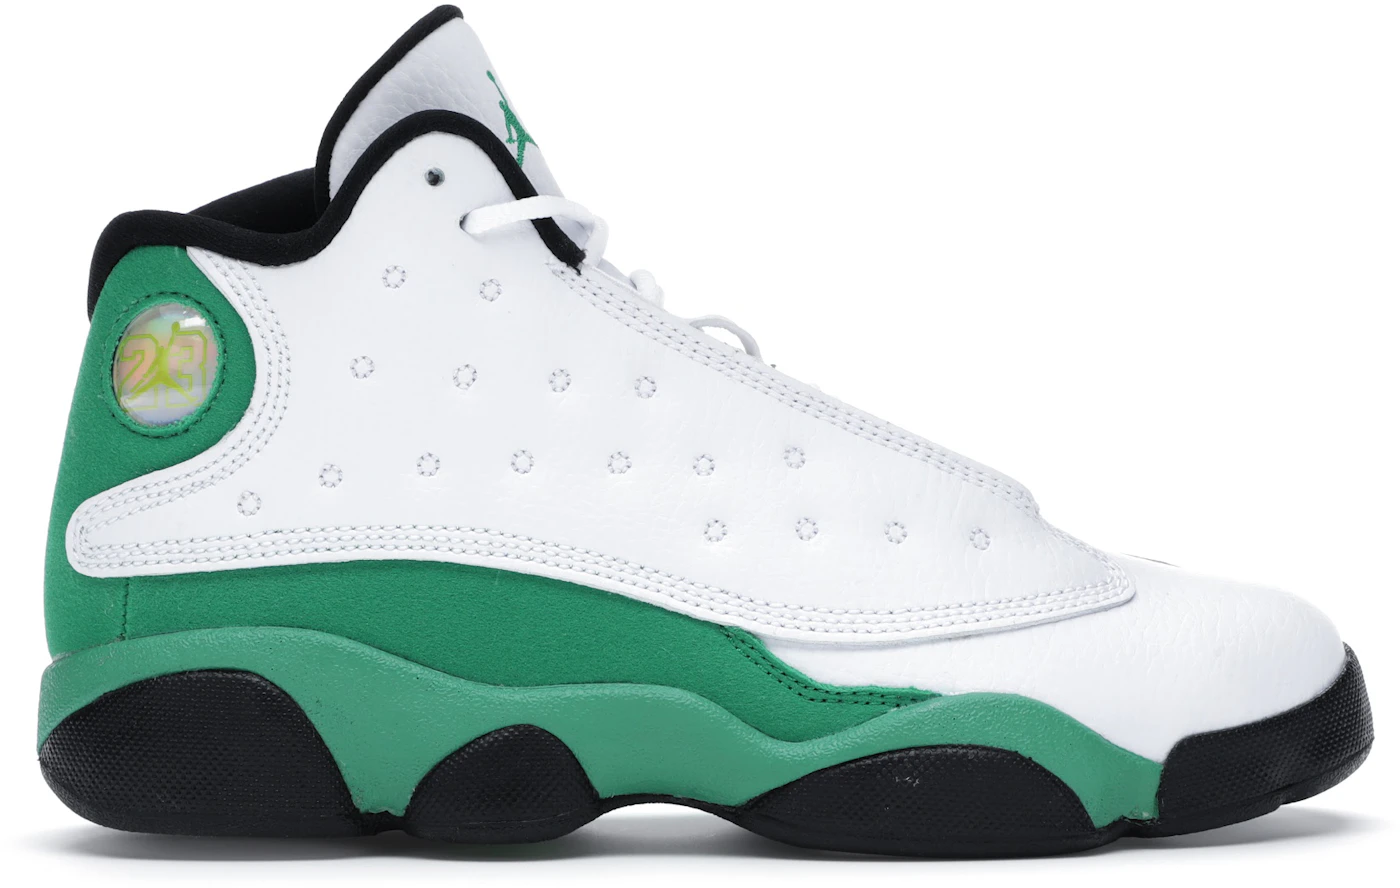 Jordan 13 Retro White Lucky Green (PS) Kids' - 414575-113 - US